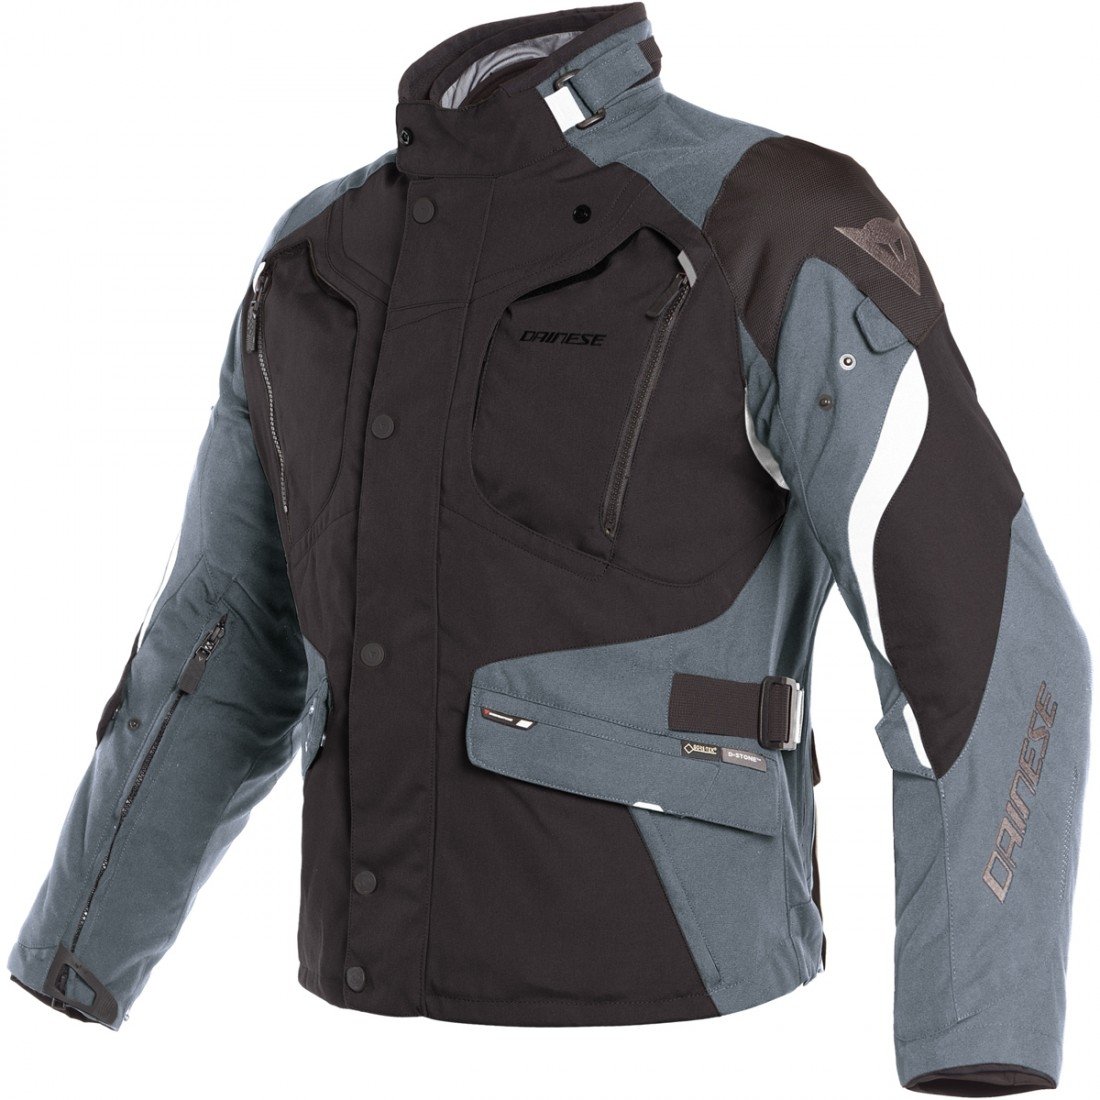 Image of Dainese Dolomiti Gore-Tex Jacket Black Ebony Light Gray Size 46 ID 8052644858662